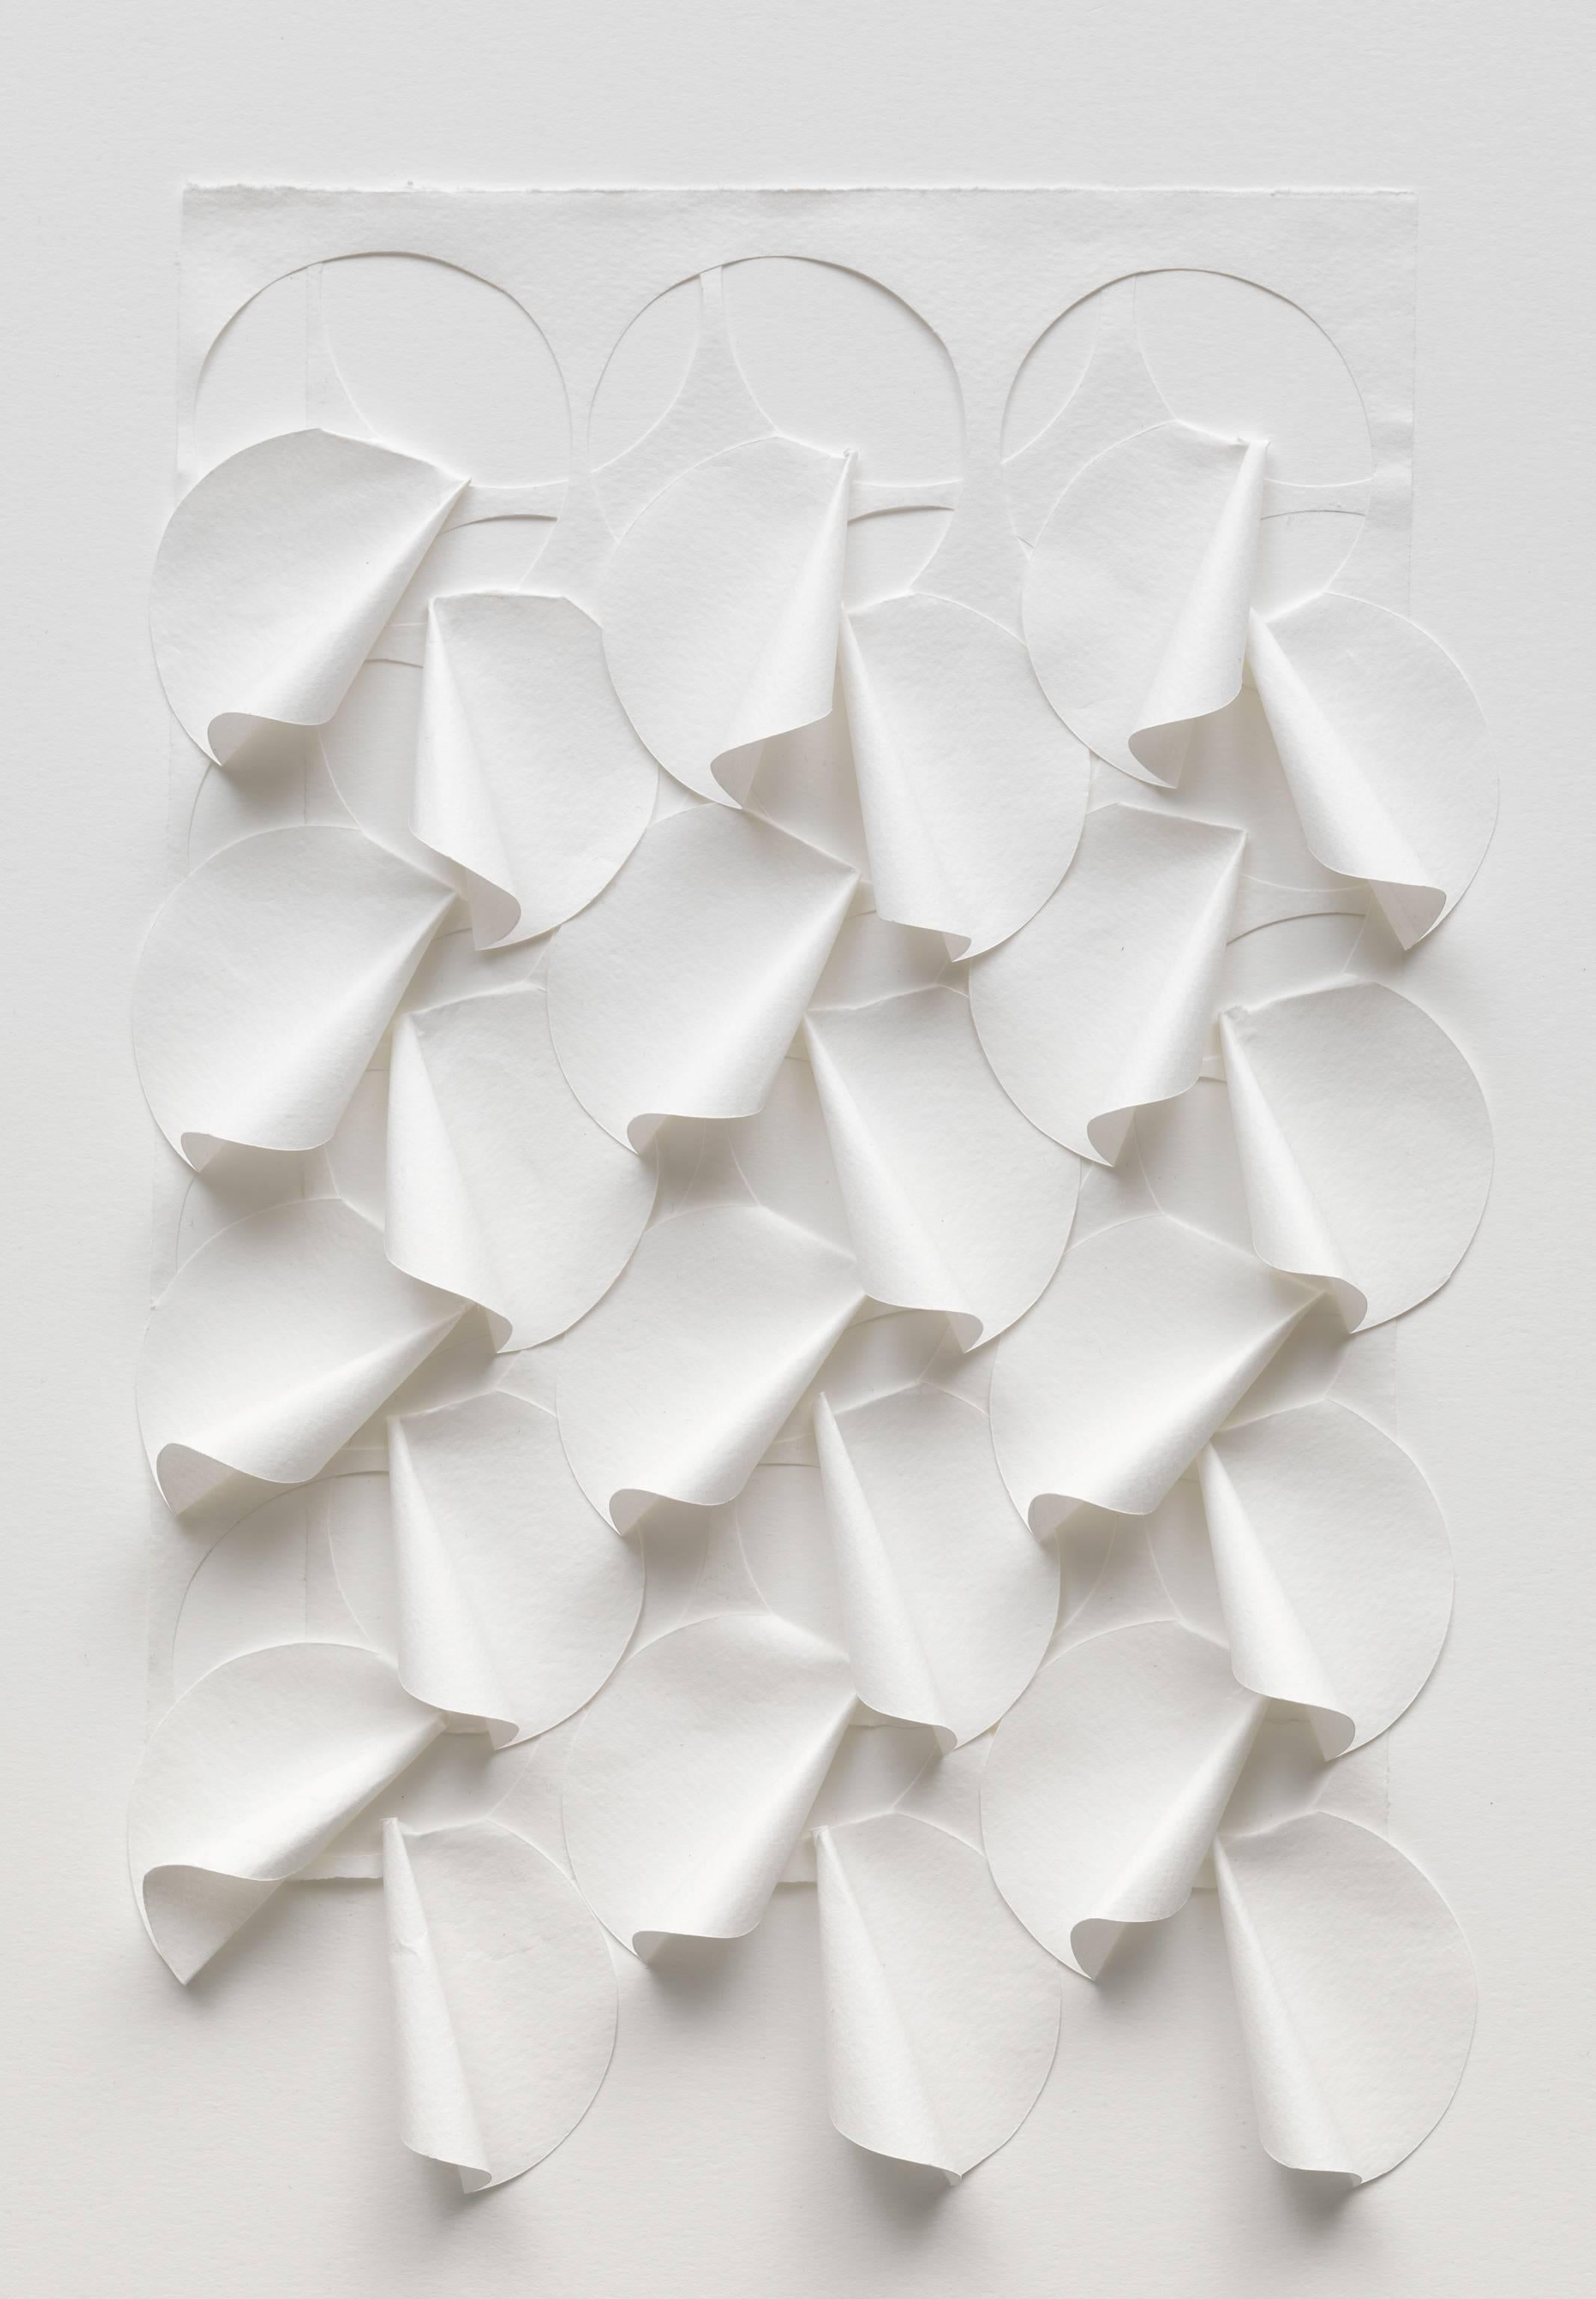 Liz Jaff Abstract Sculpture - Study: Tease